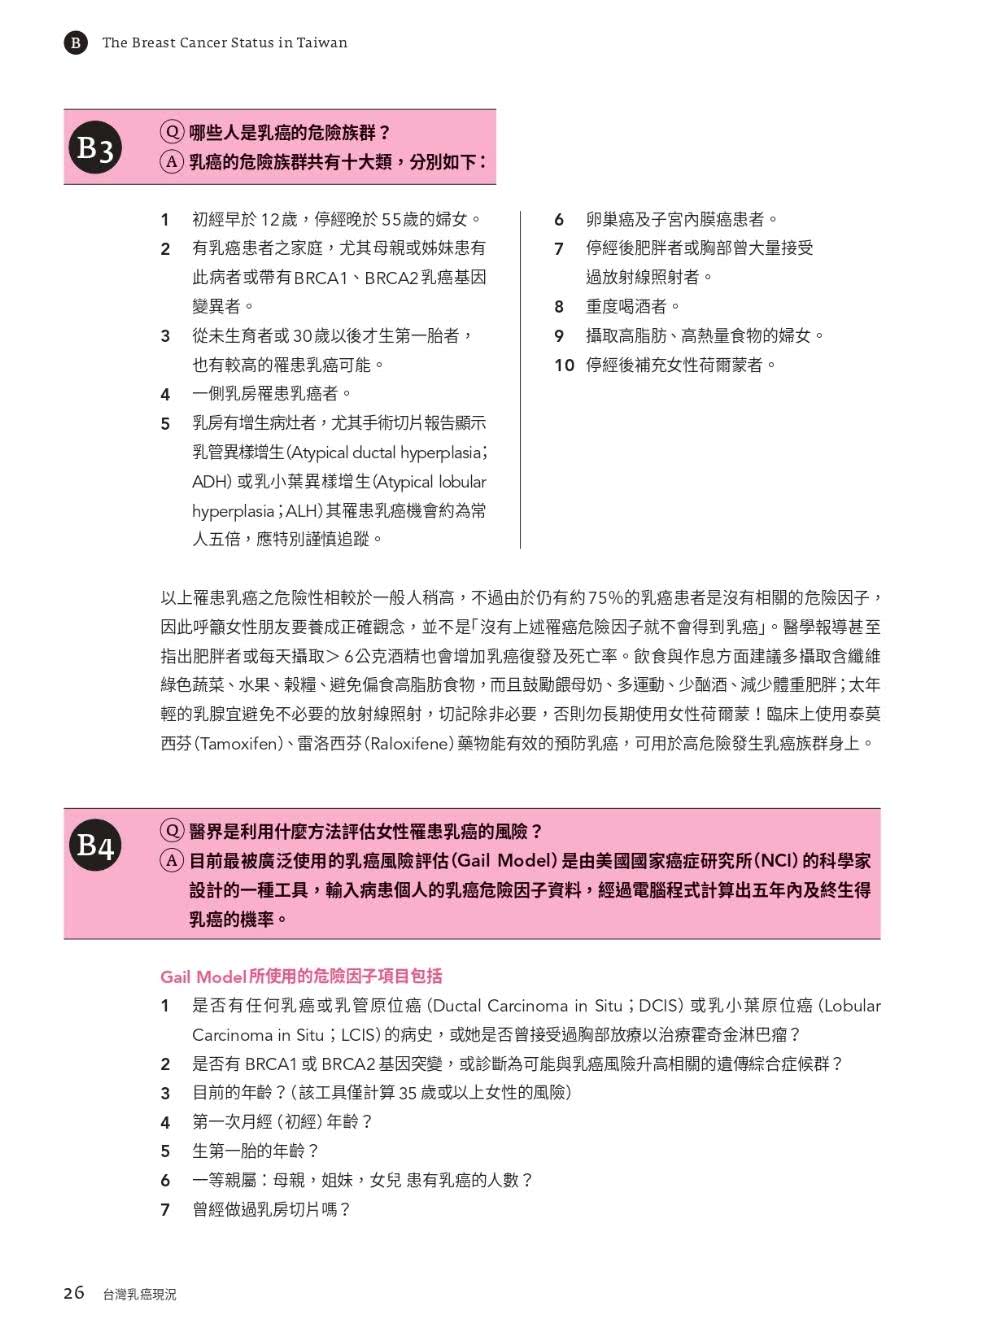 台灣女性乳癌白皮書：100個非知不可的醫學知識 關於妳的乳房 掌上微型Google冊